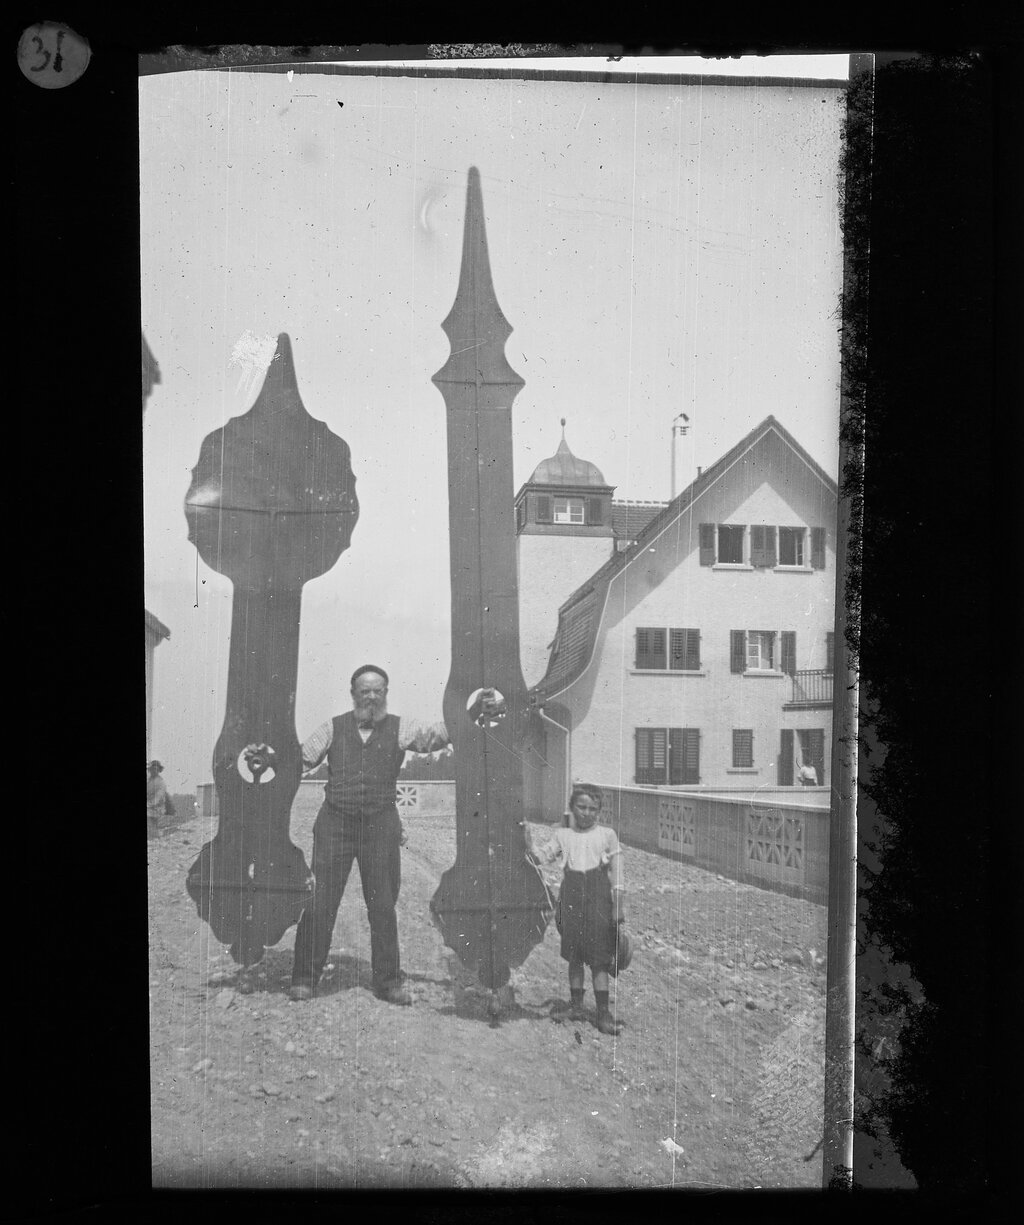 Staatsarchiv St.Gallen, CH 5/1.29 - Bild aus dem Glasplatten-Bestand zum Bau der evangelischen Kirche Heiligkreuz in St.Gallen aus dem Jahr 1912